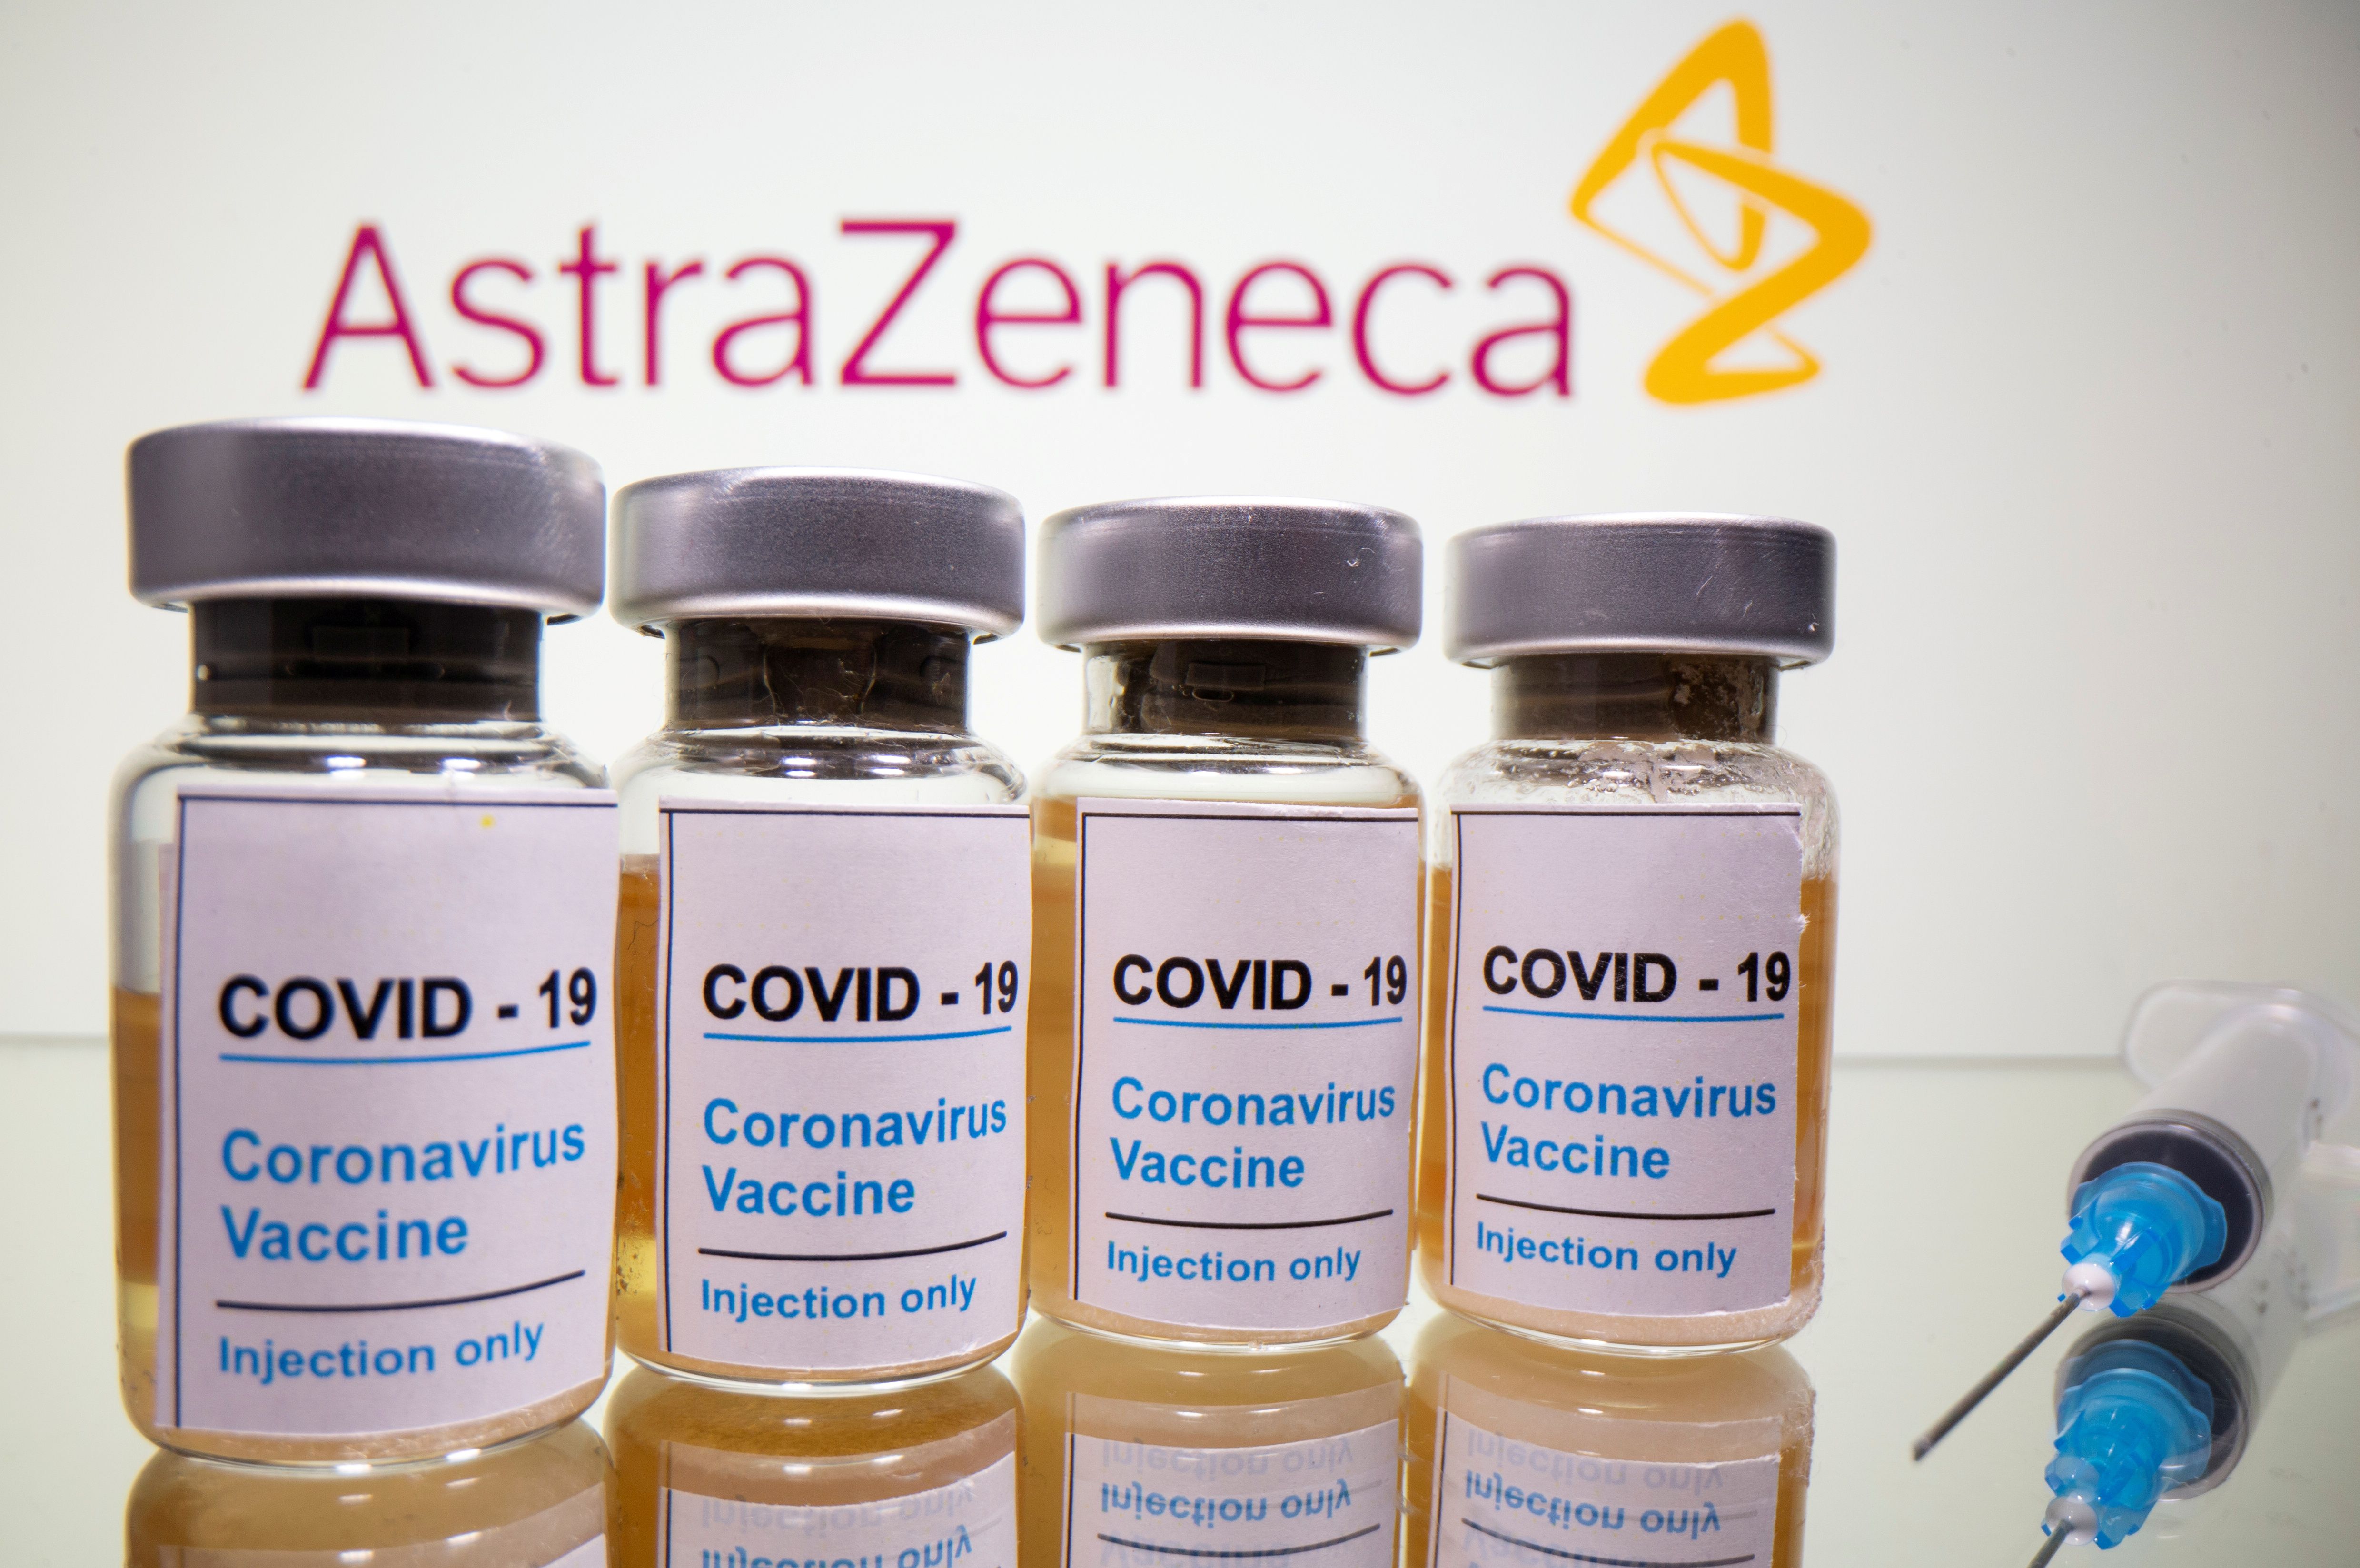 AstraZeneca y el Gobierno argentino sellaron un acuerdo para la disposición de 22 millones de dosis de la vacuna contra COVID-19 - REUTERS/Dado Ruvic/Illustration/File Photo